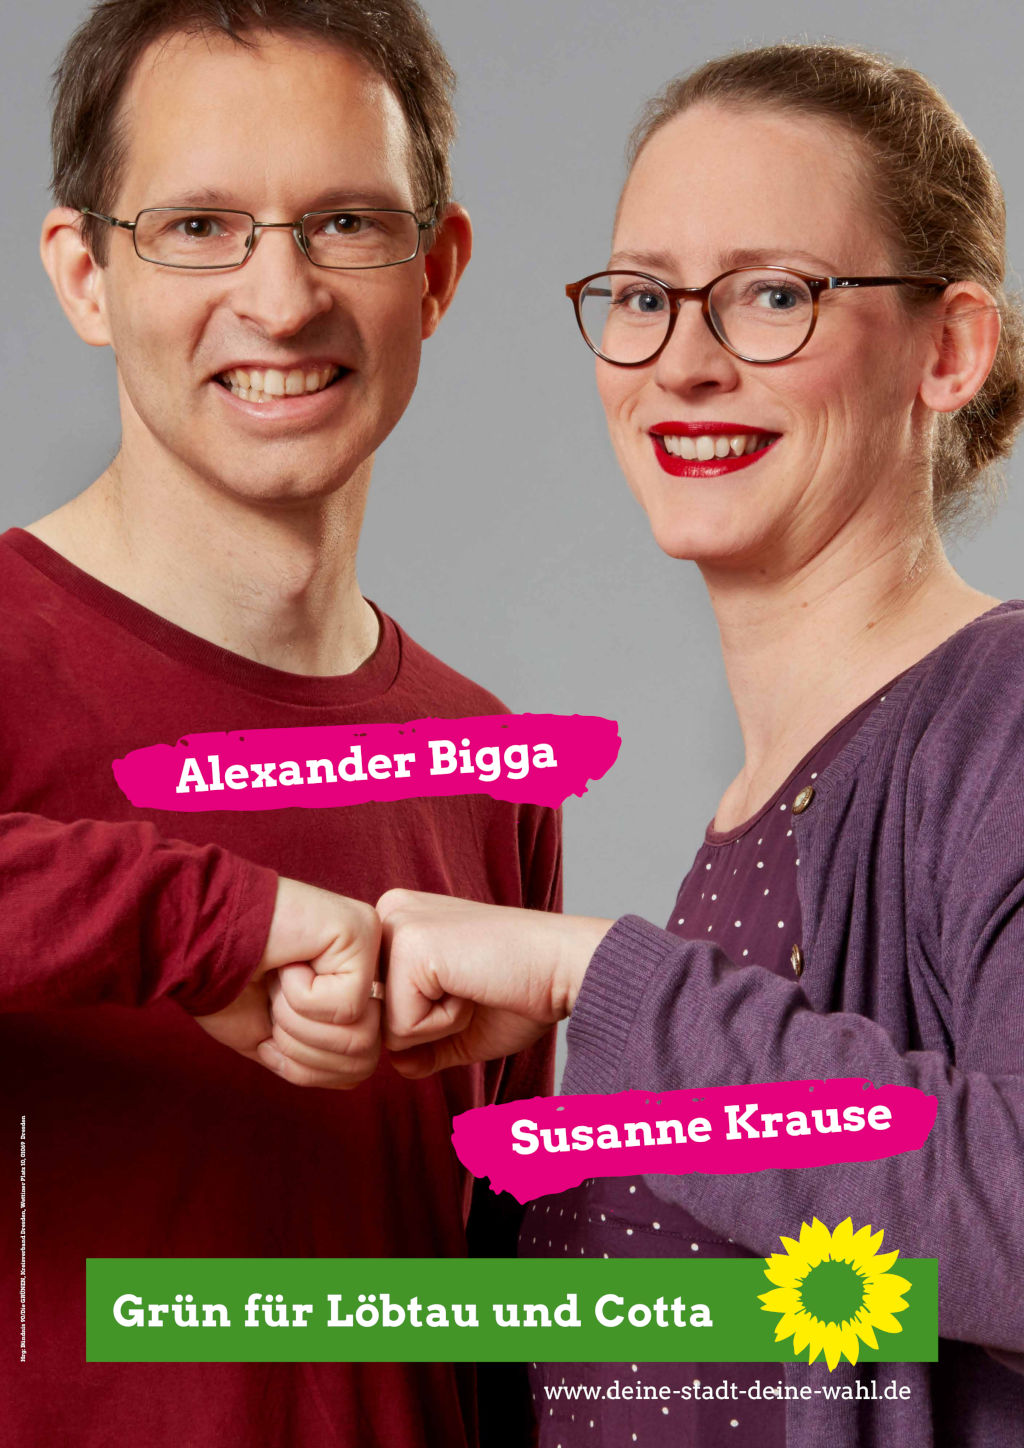 Wahlplakat mit zwei Personen. Links Alexander Bigga, rechts Susanne Krause. Beide Personen stoßen mit der Faust zusammen. Das Plakat ist von der Kommunalwahl 2019.